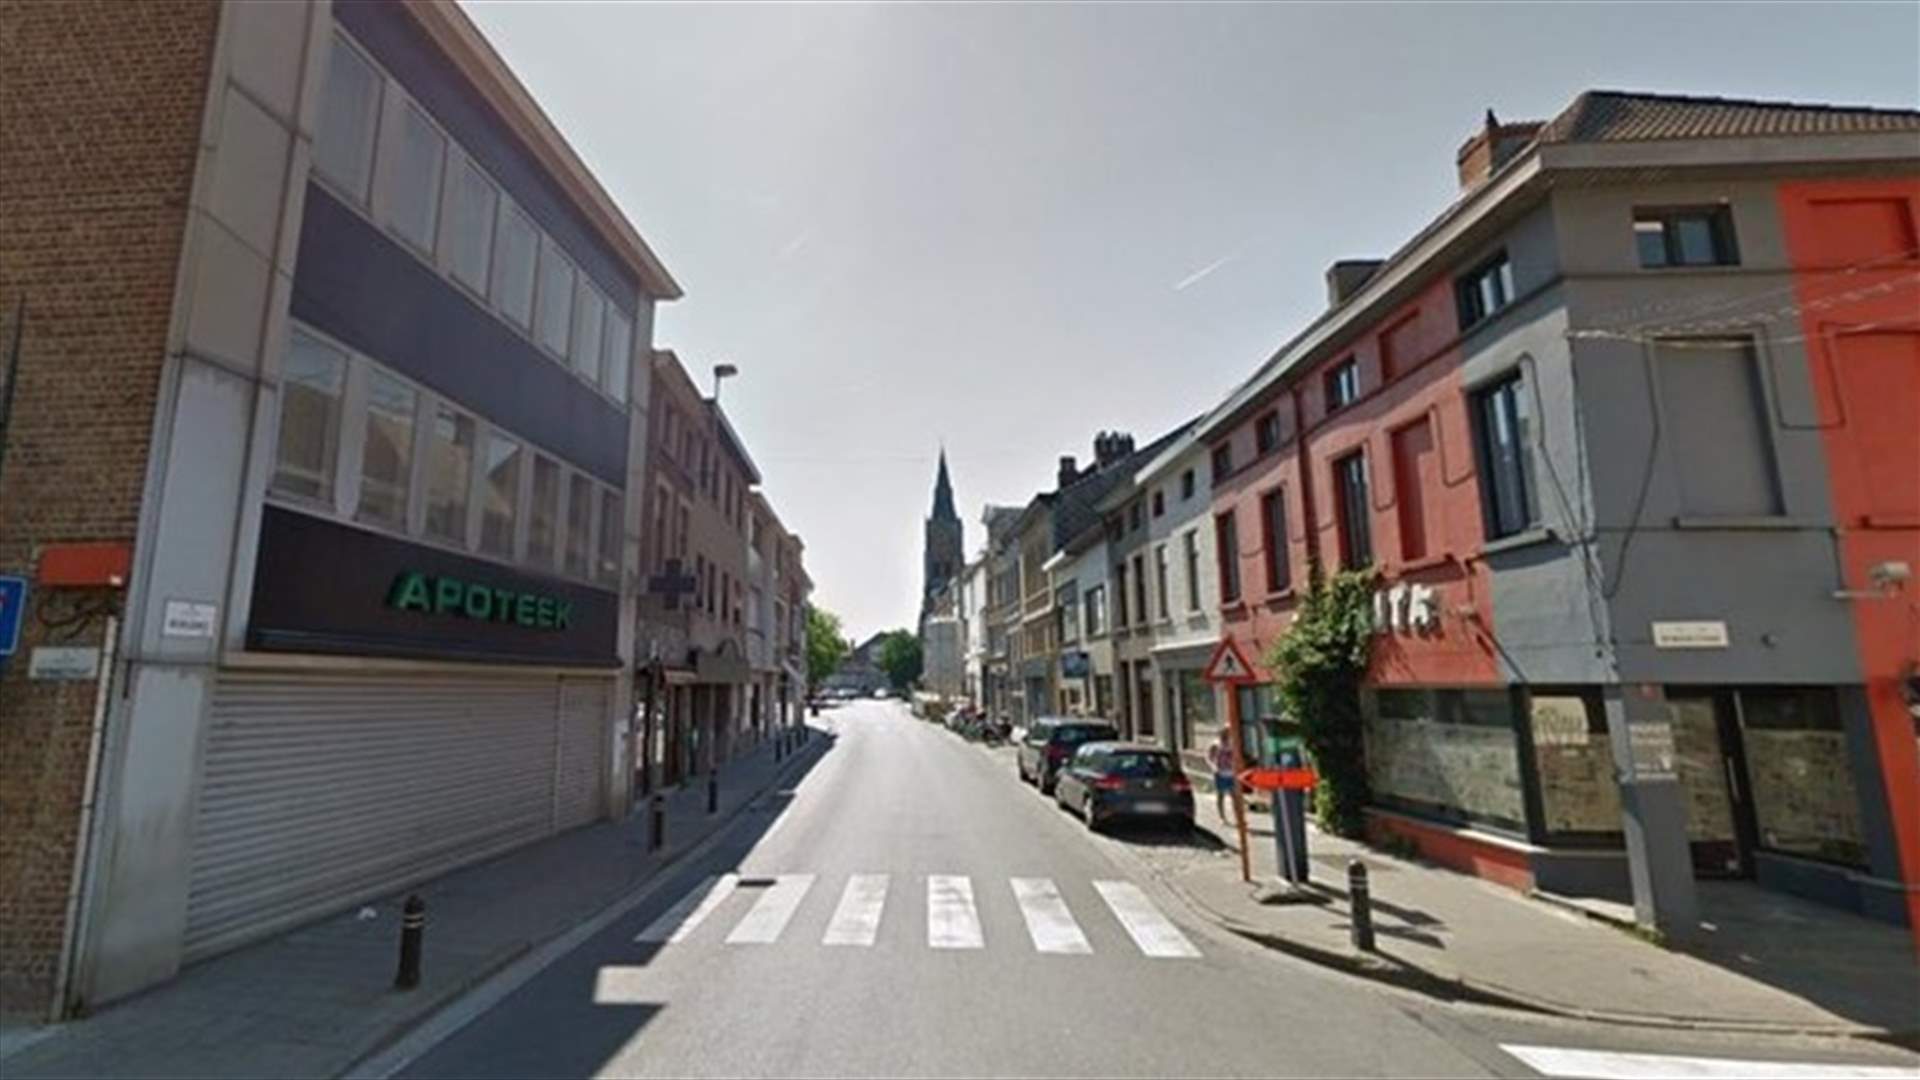 الشرطة البلجيكية تطلق النار على امرأة طعنت شخصين بسكين